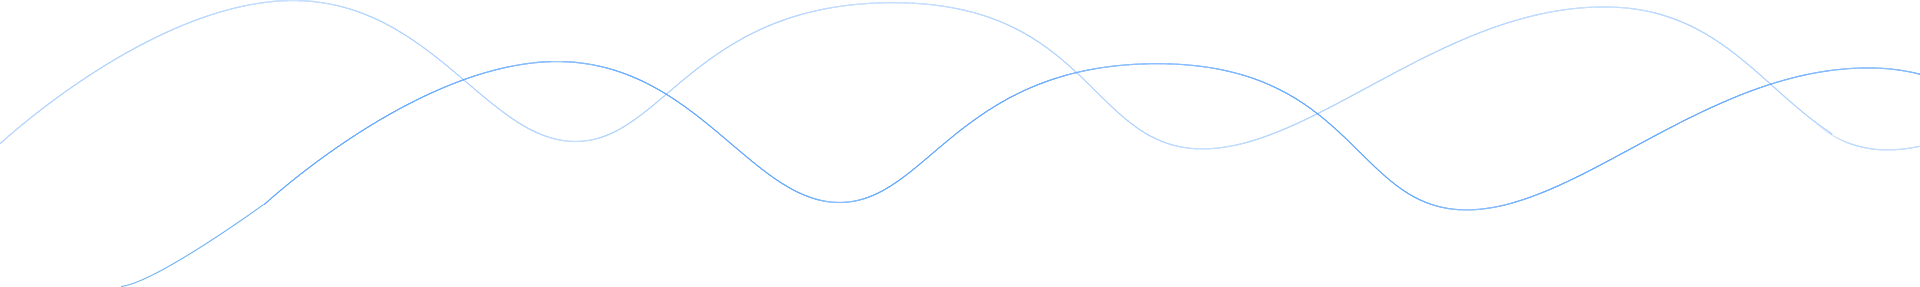 曲线图